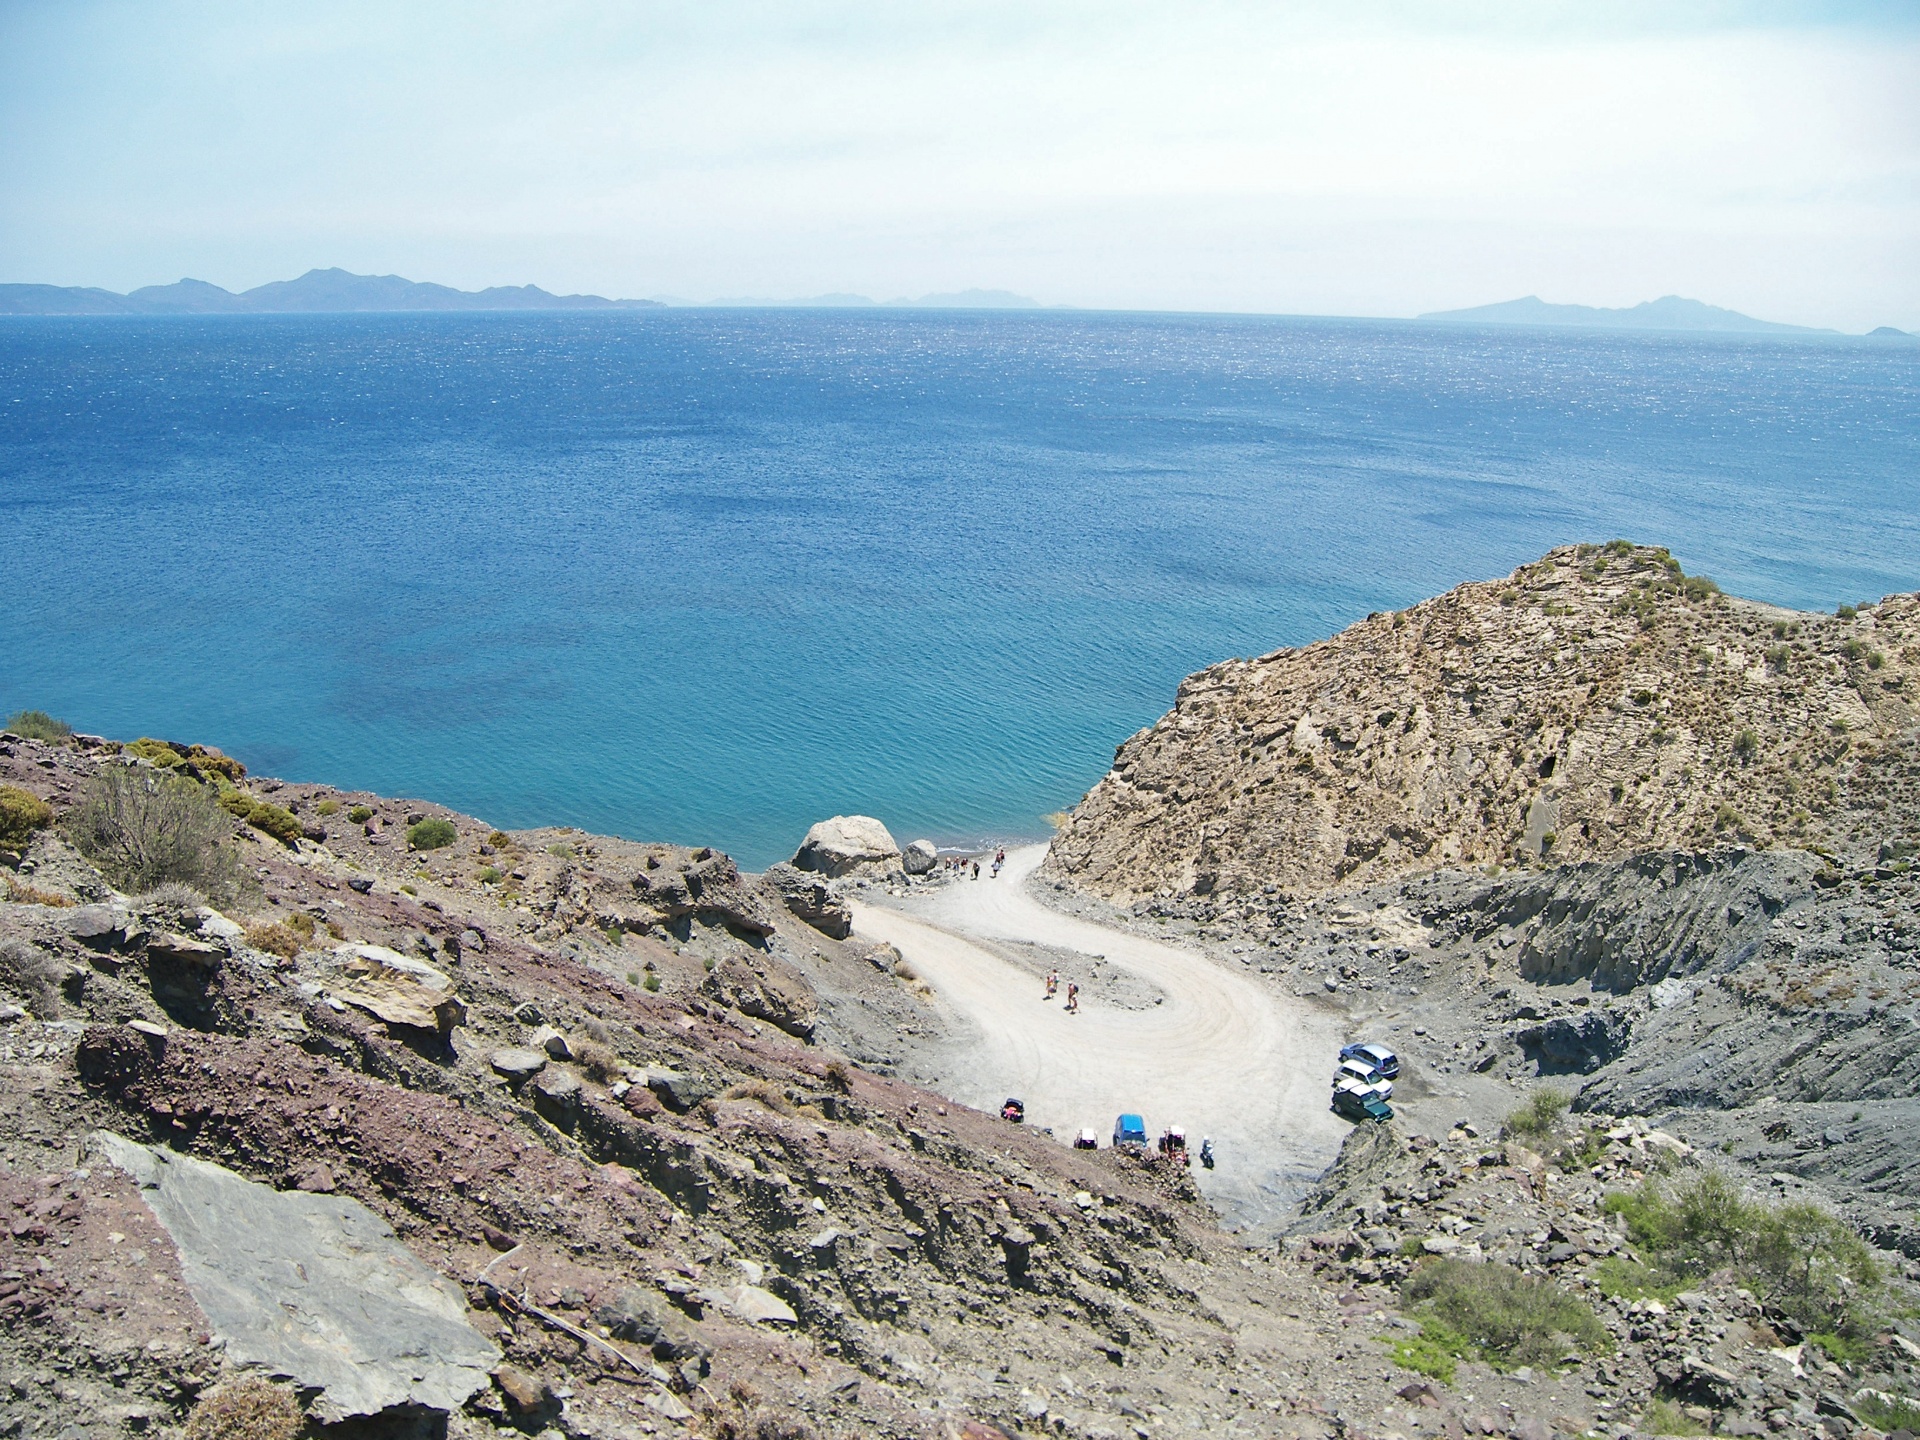 An Aegean View